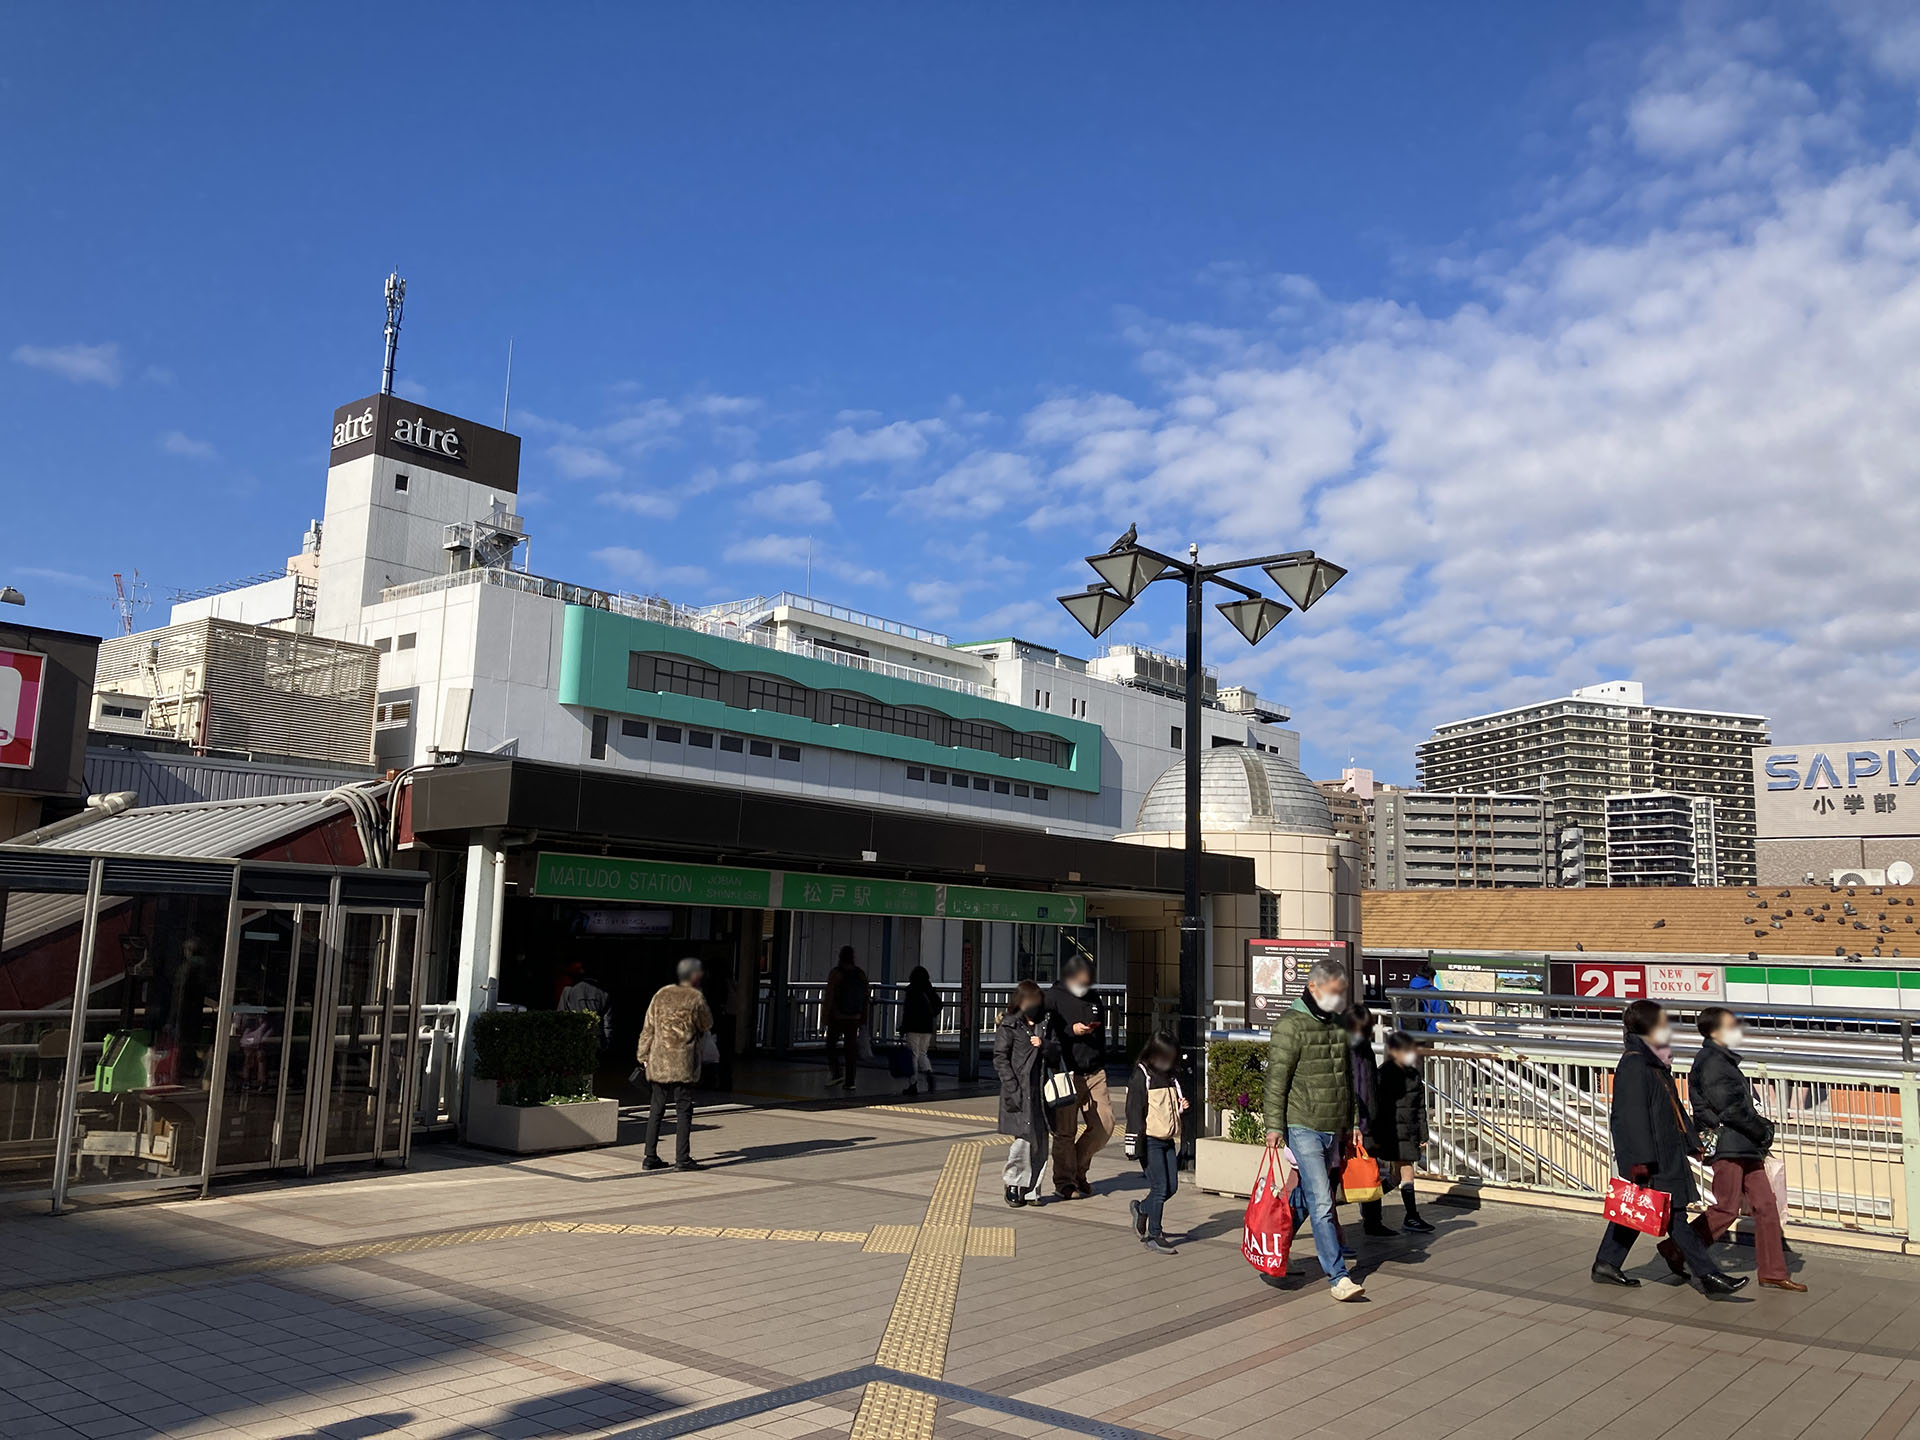 松戸駅東口